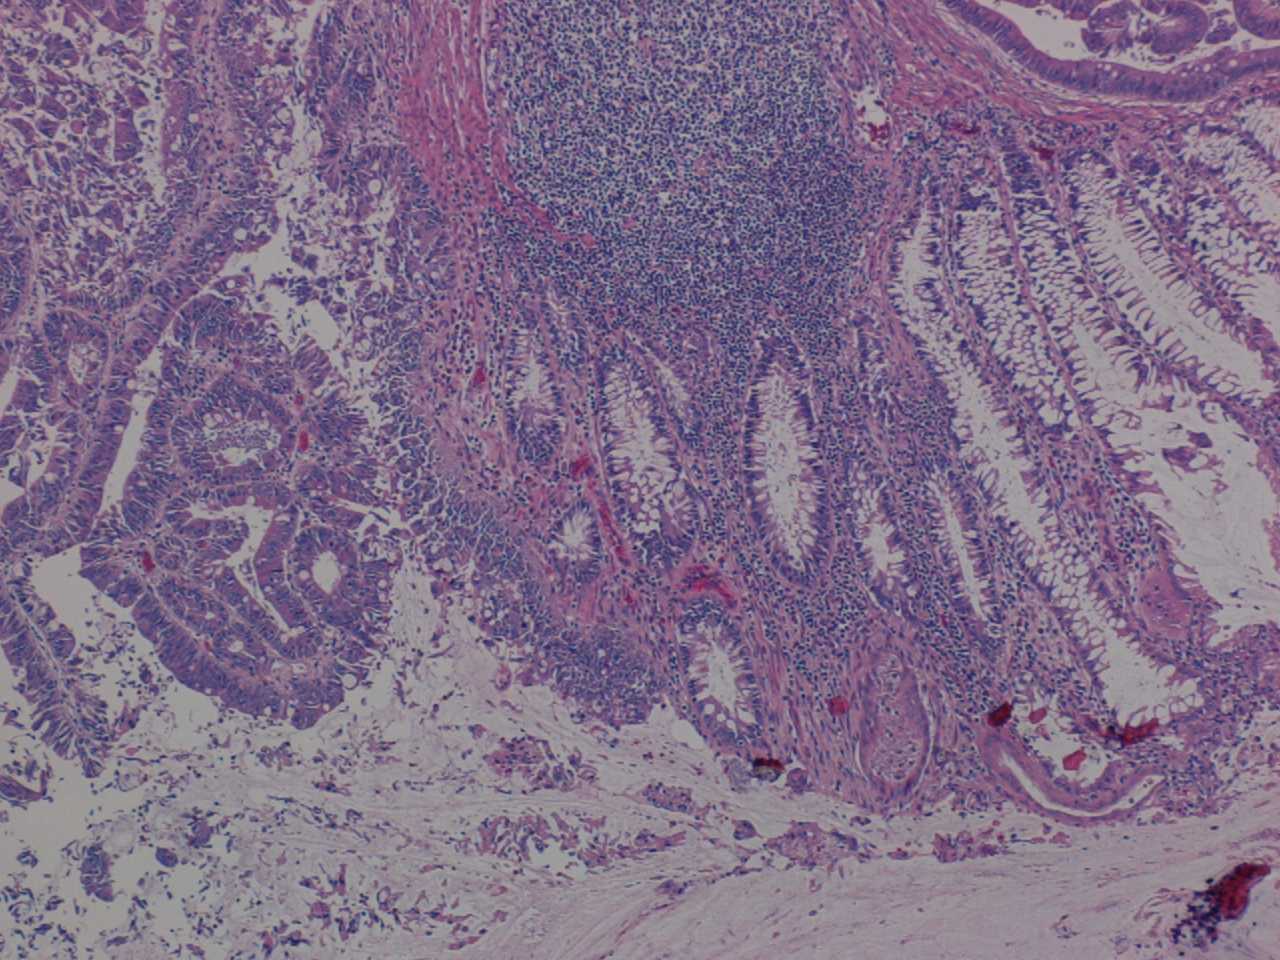 Imagen de Tumores en colon y ovario / Tumors in colon and ovary.